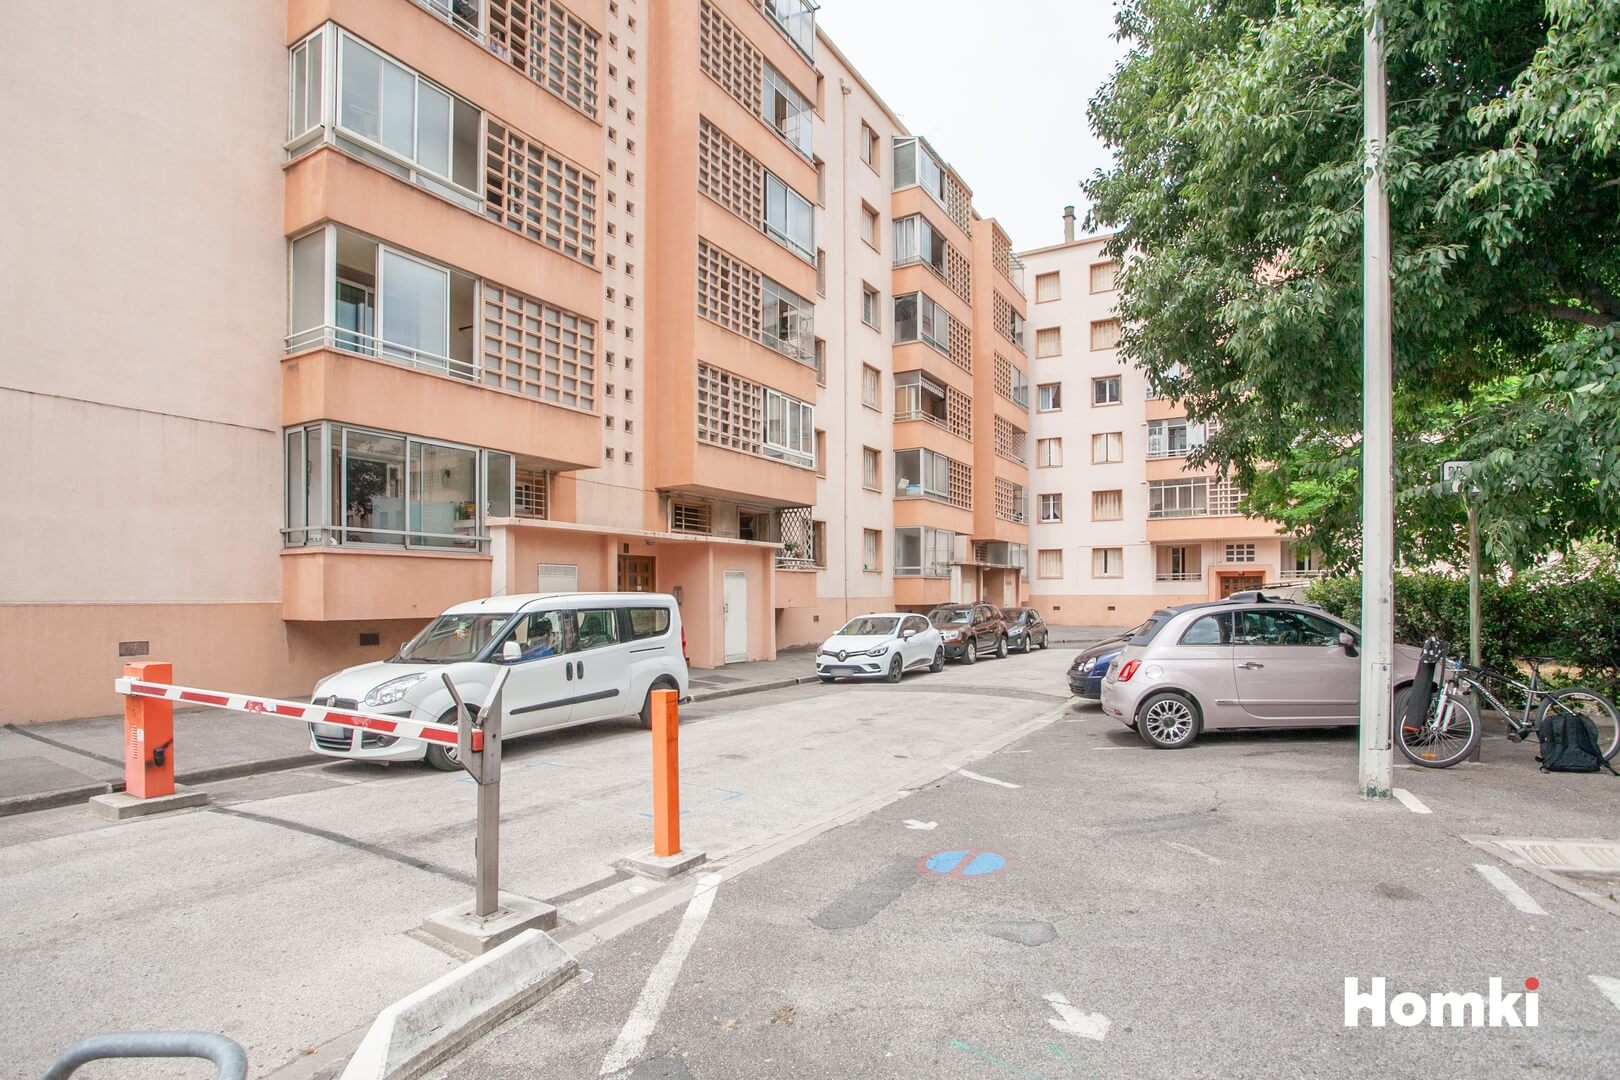 Homki - Vente Appartement  de 53.55 m² à Marseille 13009